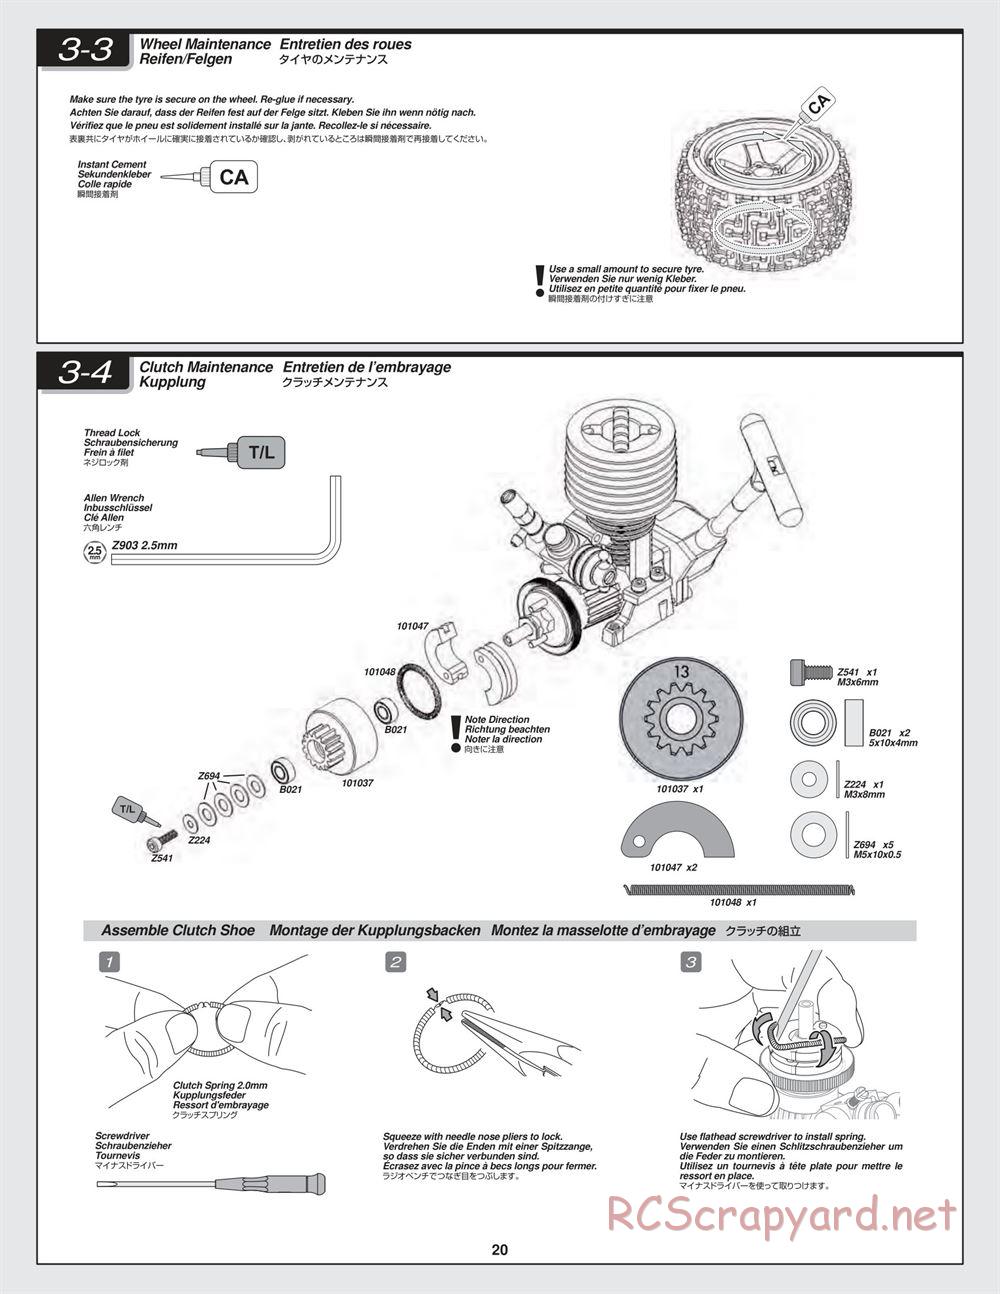 HPI - Bullet ST 3.0 - Manual - Page 20